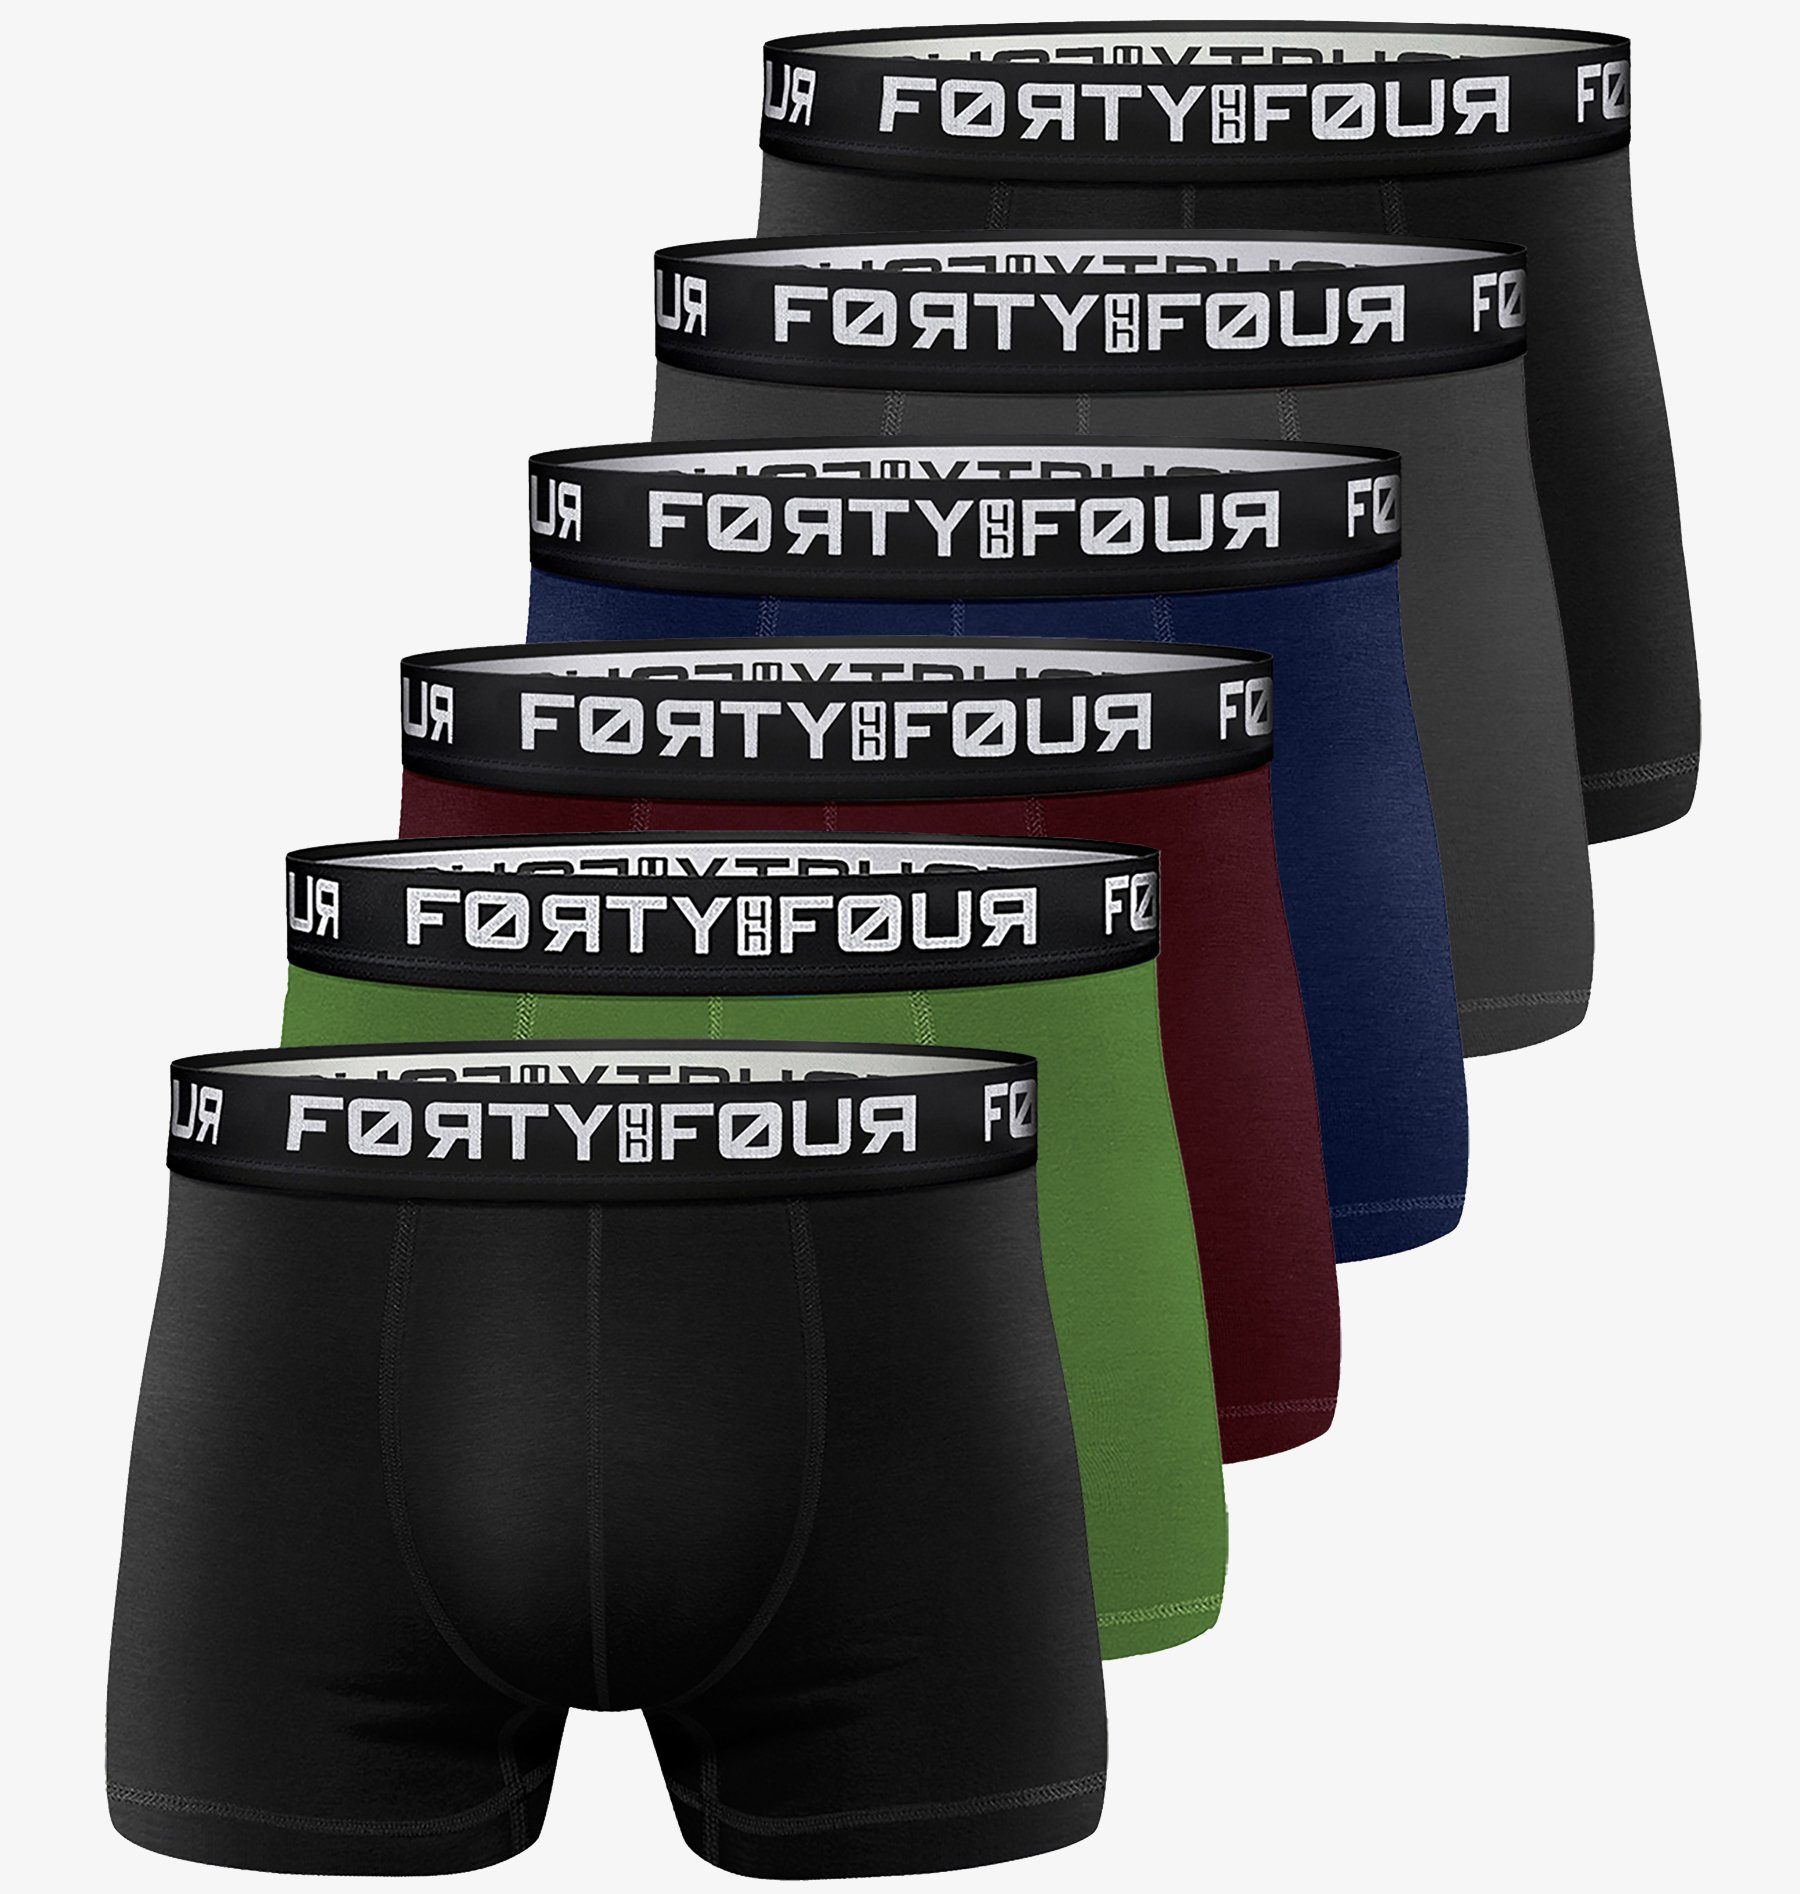 FortyFour Boxershorts Herren Männer Unterhosen Baumwolle Premium Qualität perfekte Passform (Vorteilspack, 6er Pack) S - 7XL 706a-mehrfarbig | Boxer anliegend